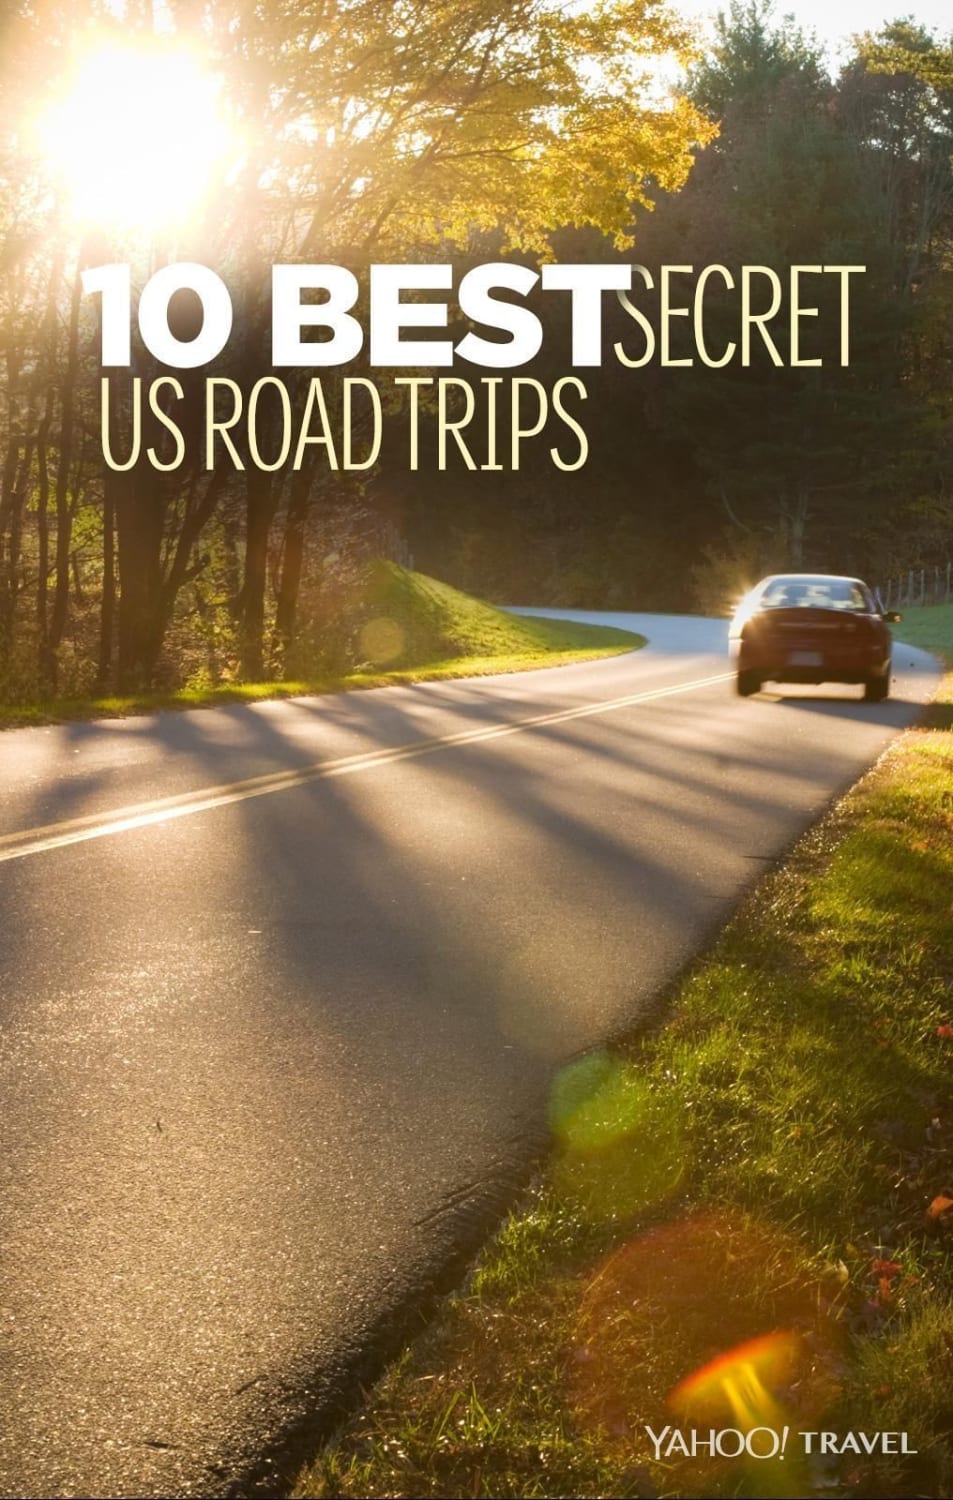 10 Best Secret U.S. Road Trips